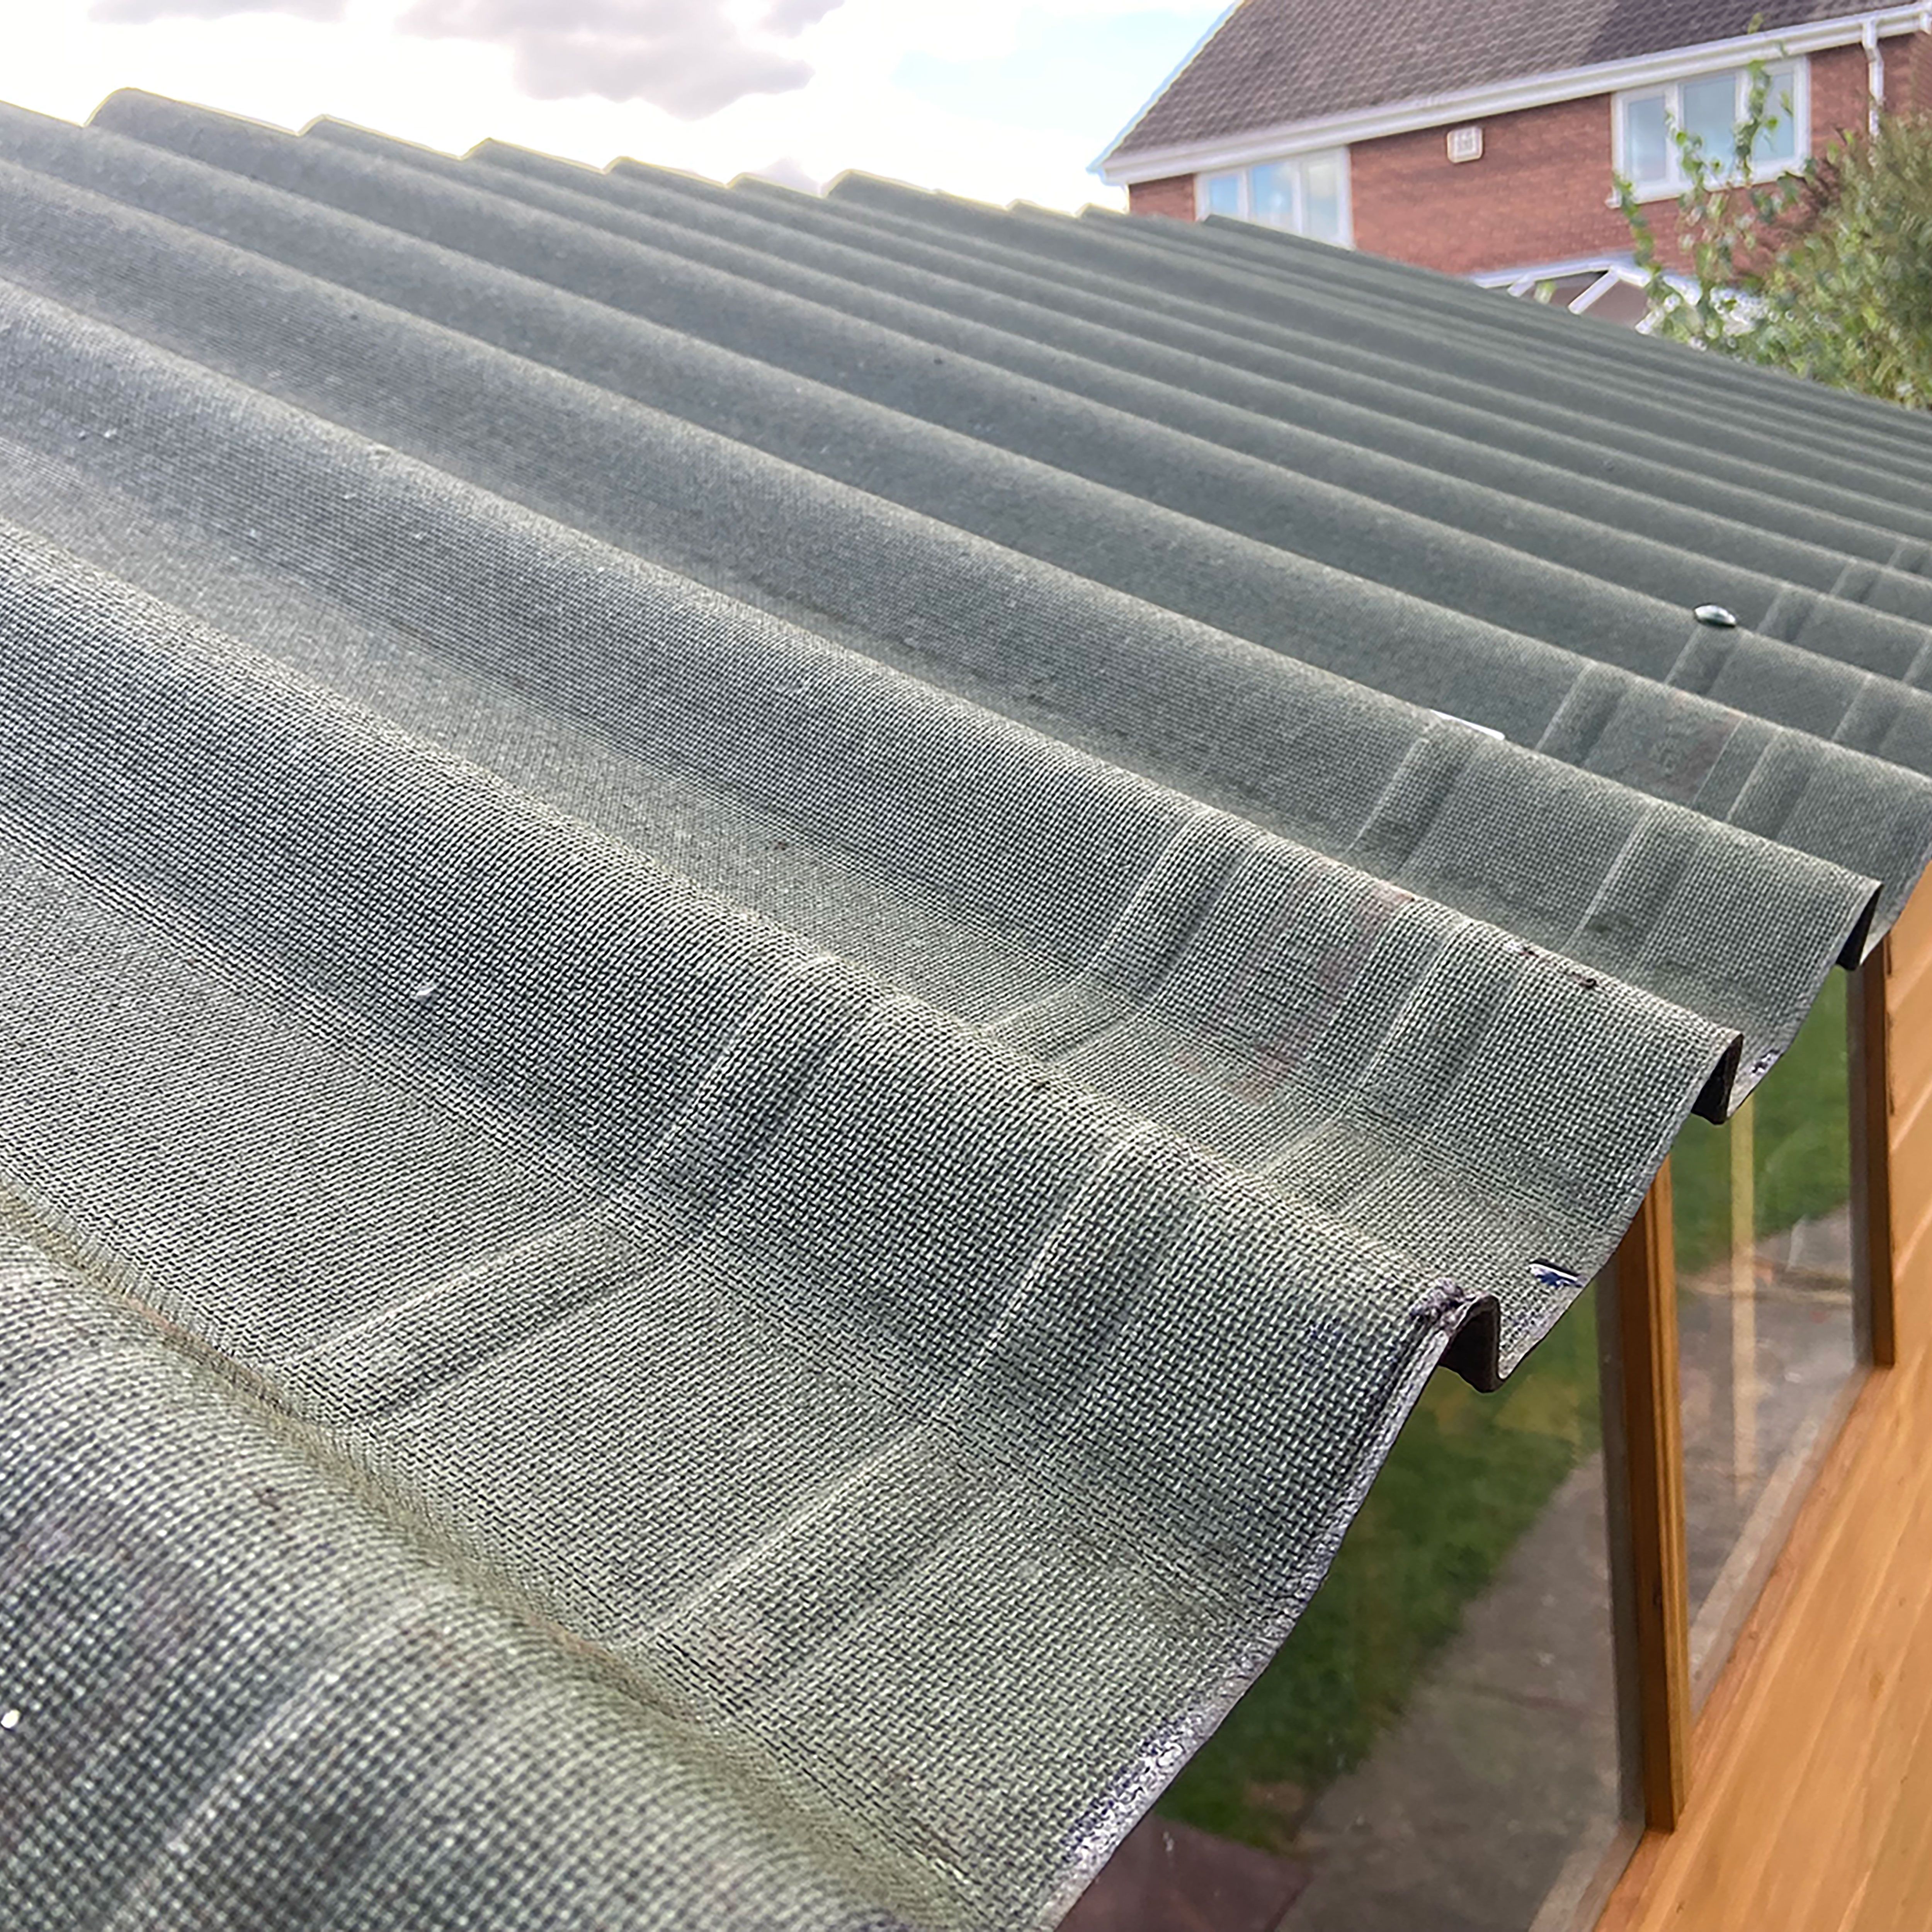 Onduline Green Bitumen Corrugated roofing sheet (L)2m (W)820mm (T)2.6mm